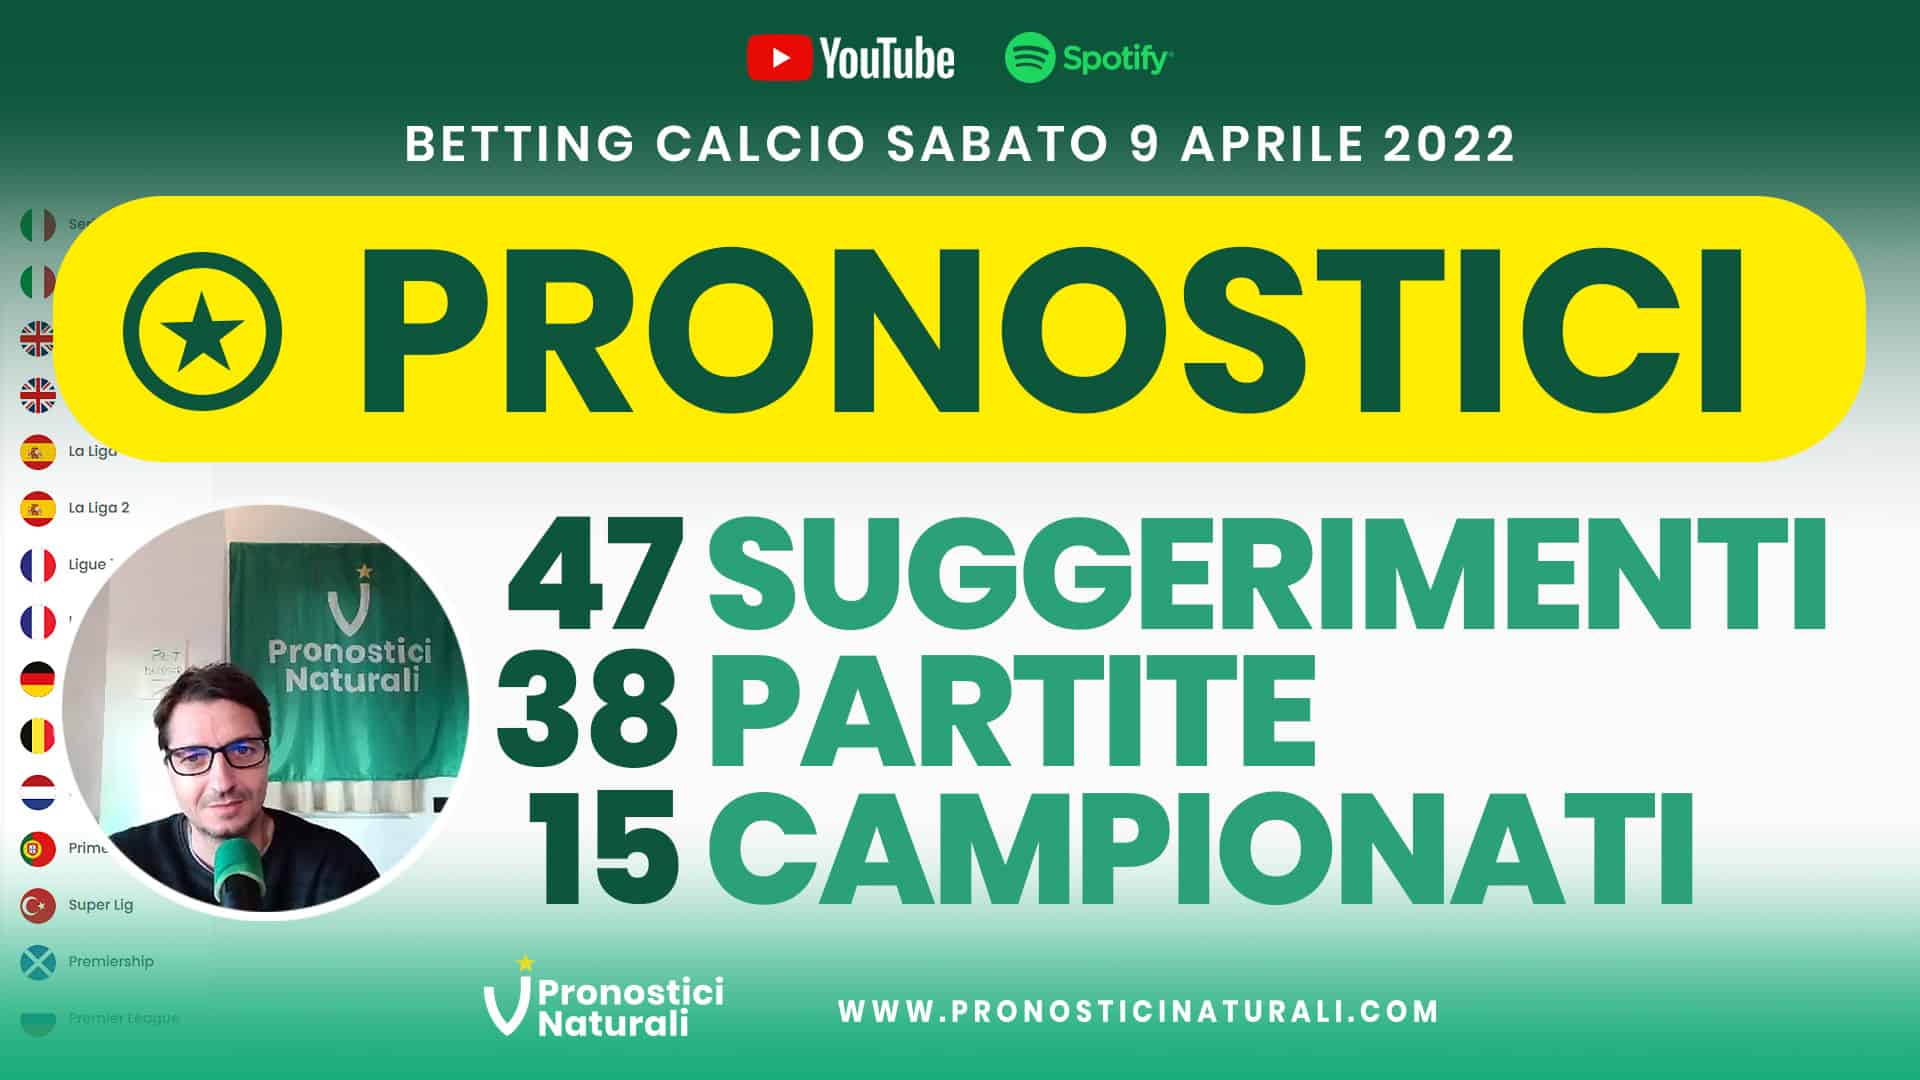 Pronostici Naturali Video Analisi Scommesse Betting Calcio Analisi Pre Partite Sabato 9 Aprile 2022